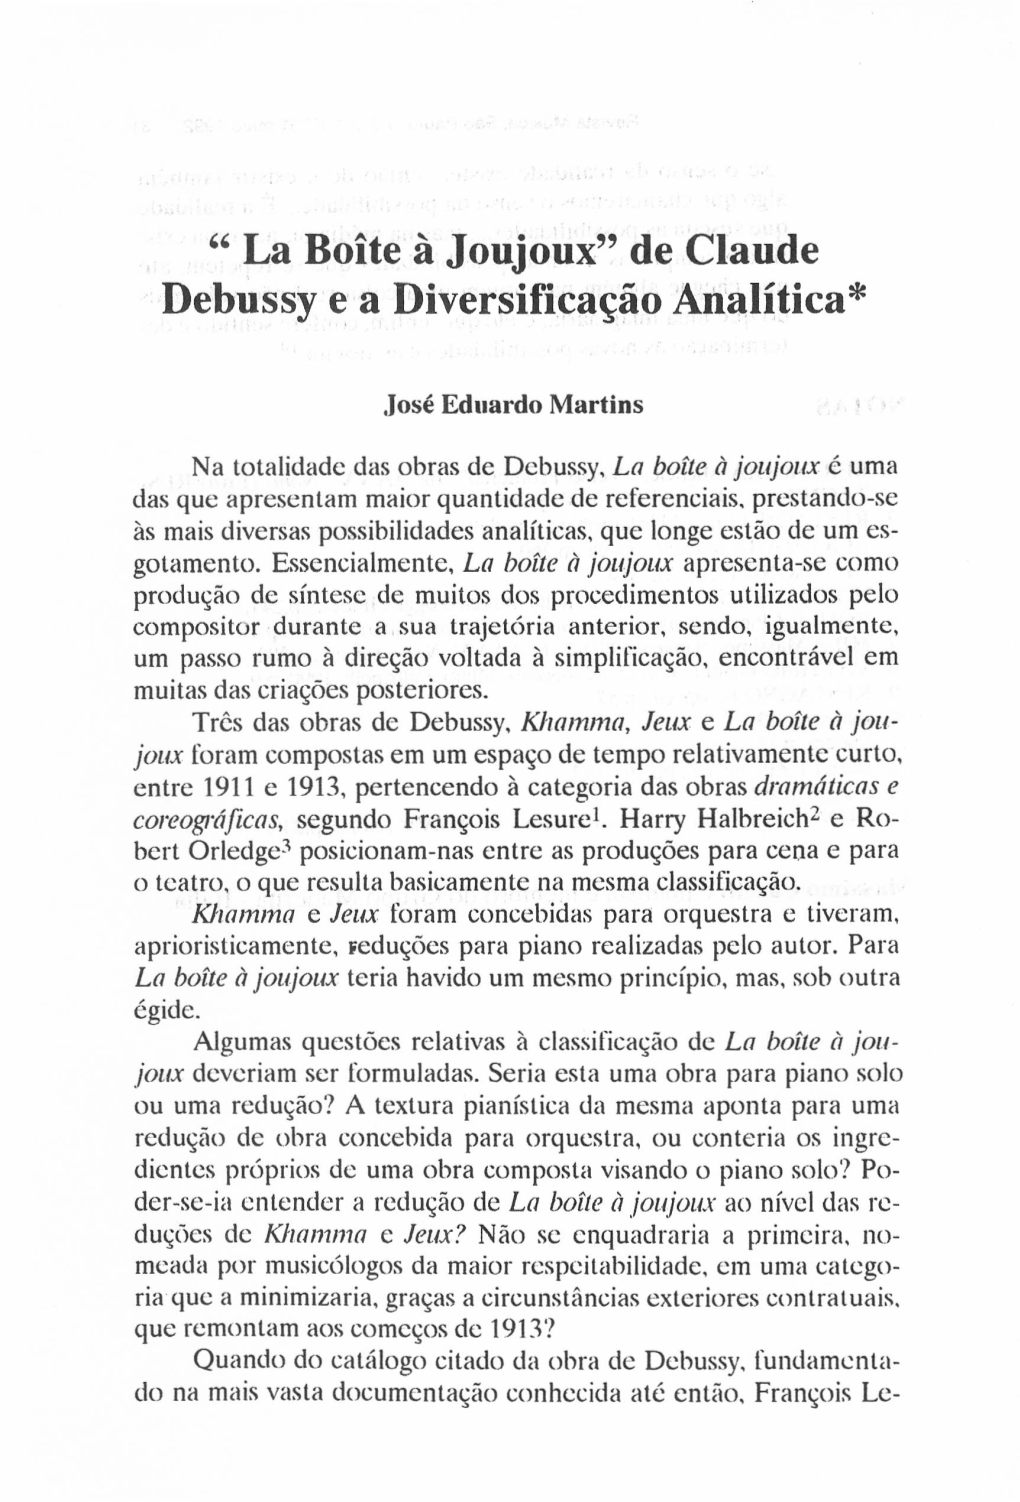 " La Boite À Joujoux" De Claude Debussye a Diversificação Analítica"